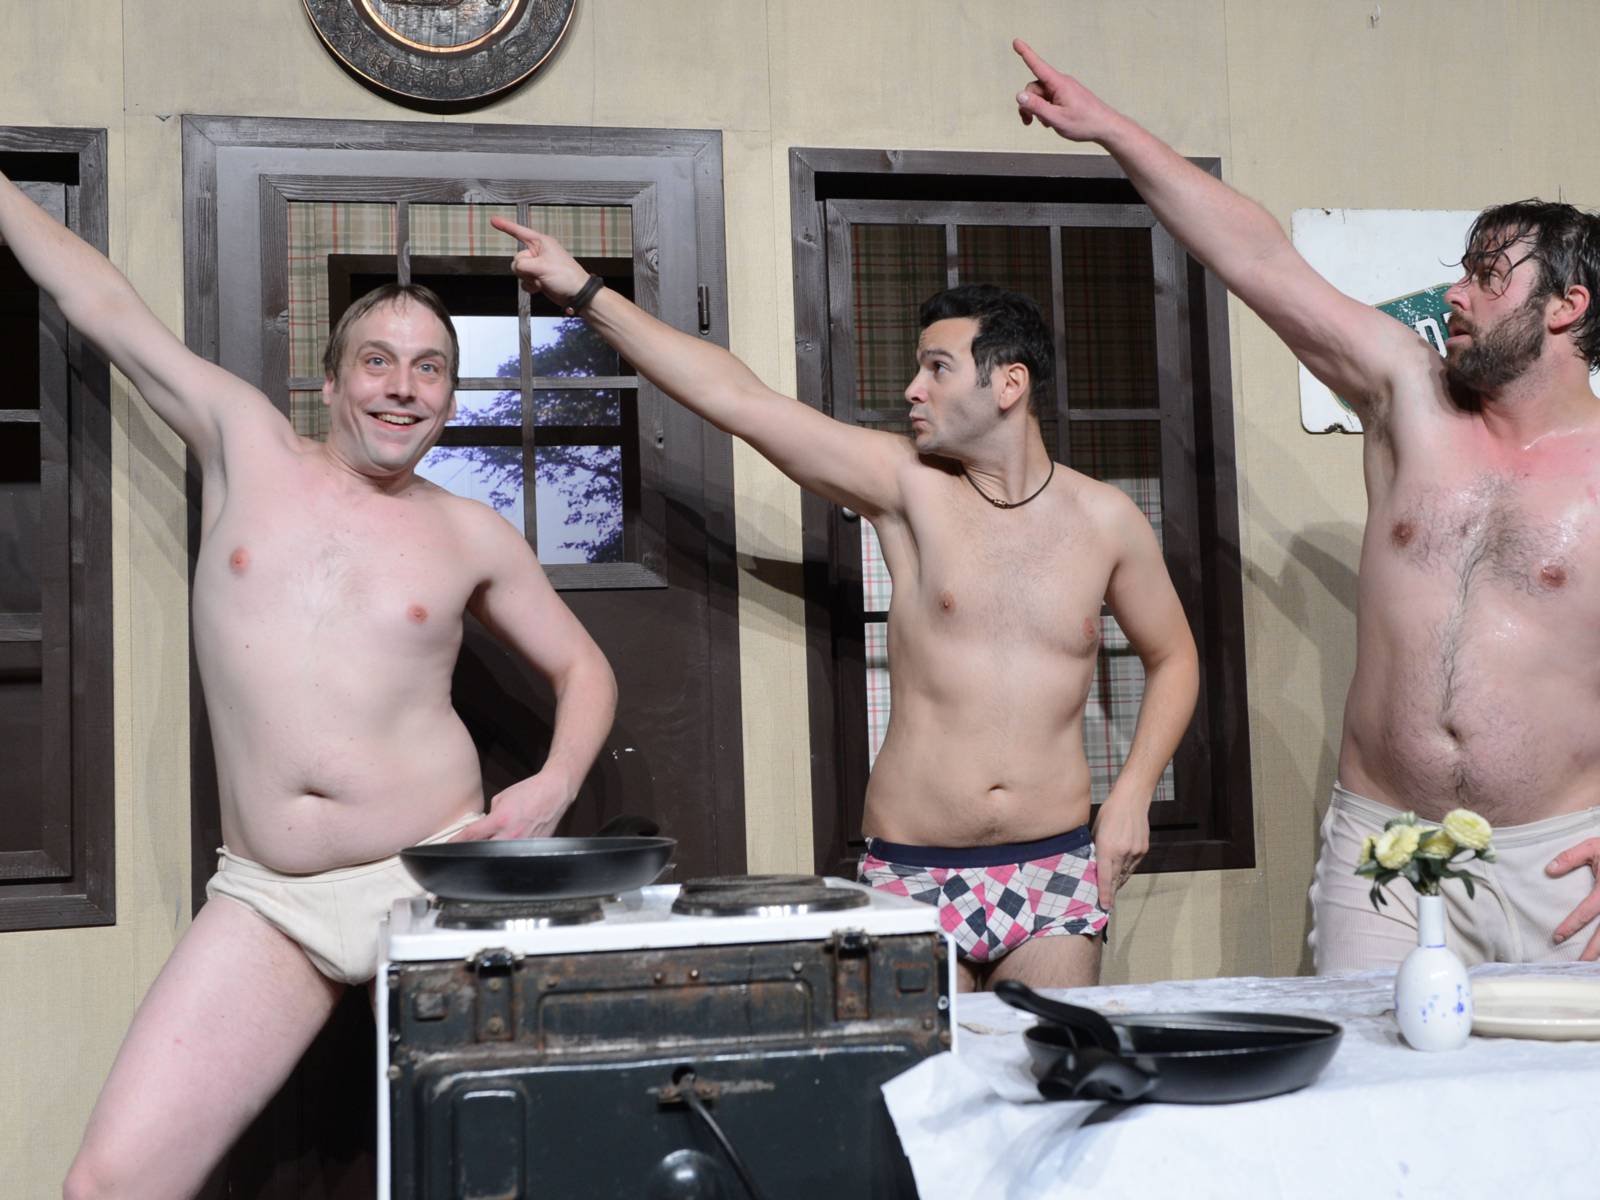 Drei Männer in Unterwäsche posen auf einer Bühne